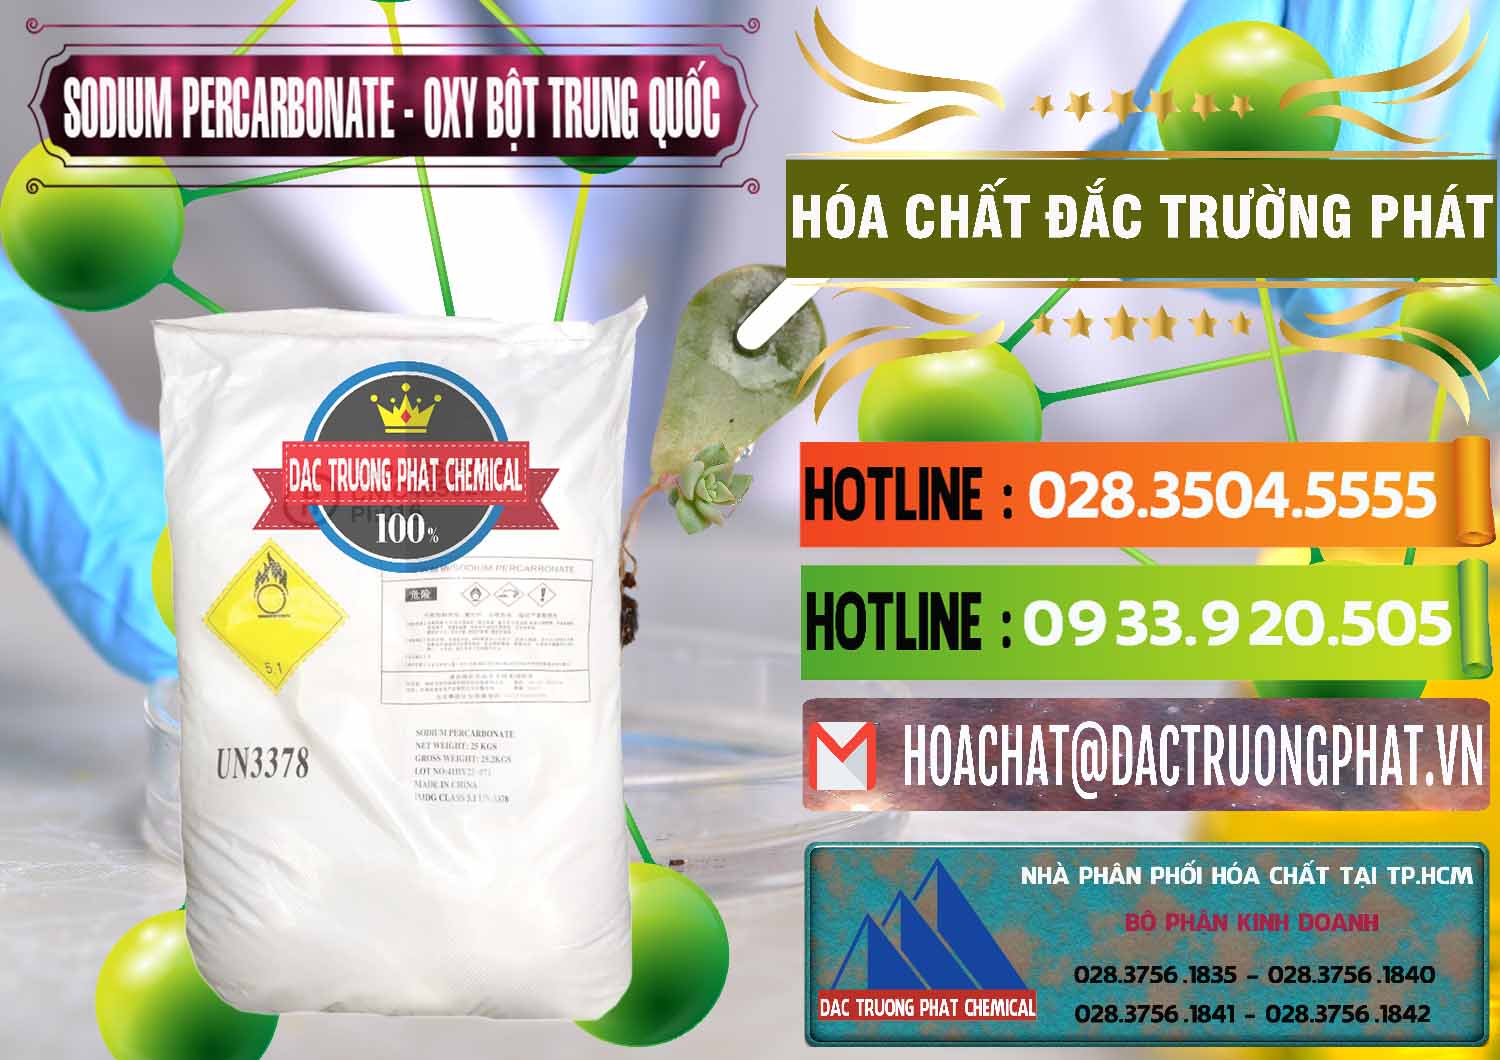 Đơn vị bán _ cung cấp Sodium Percarbonate Dạng Bột Trung Quốc China - 0390 - Nhà cung cấp & phân phối hóa chất tại TP.HCM - cungcaphoachat.com.vn